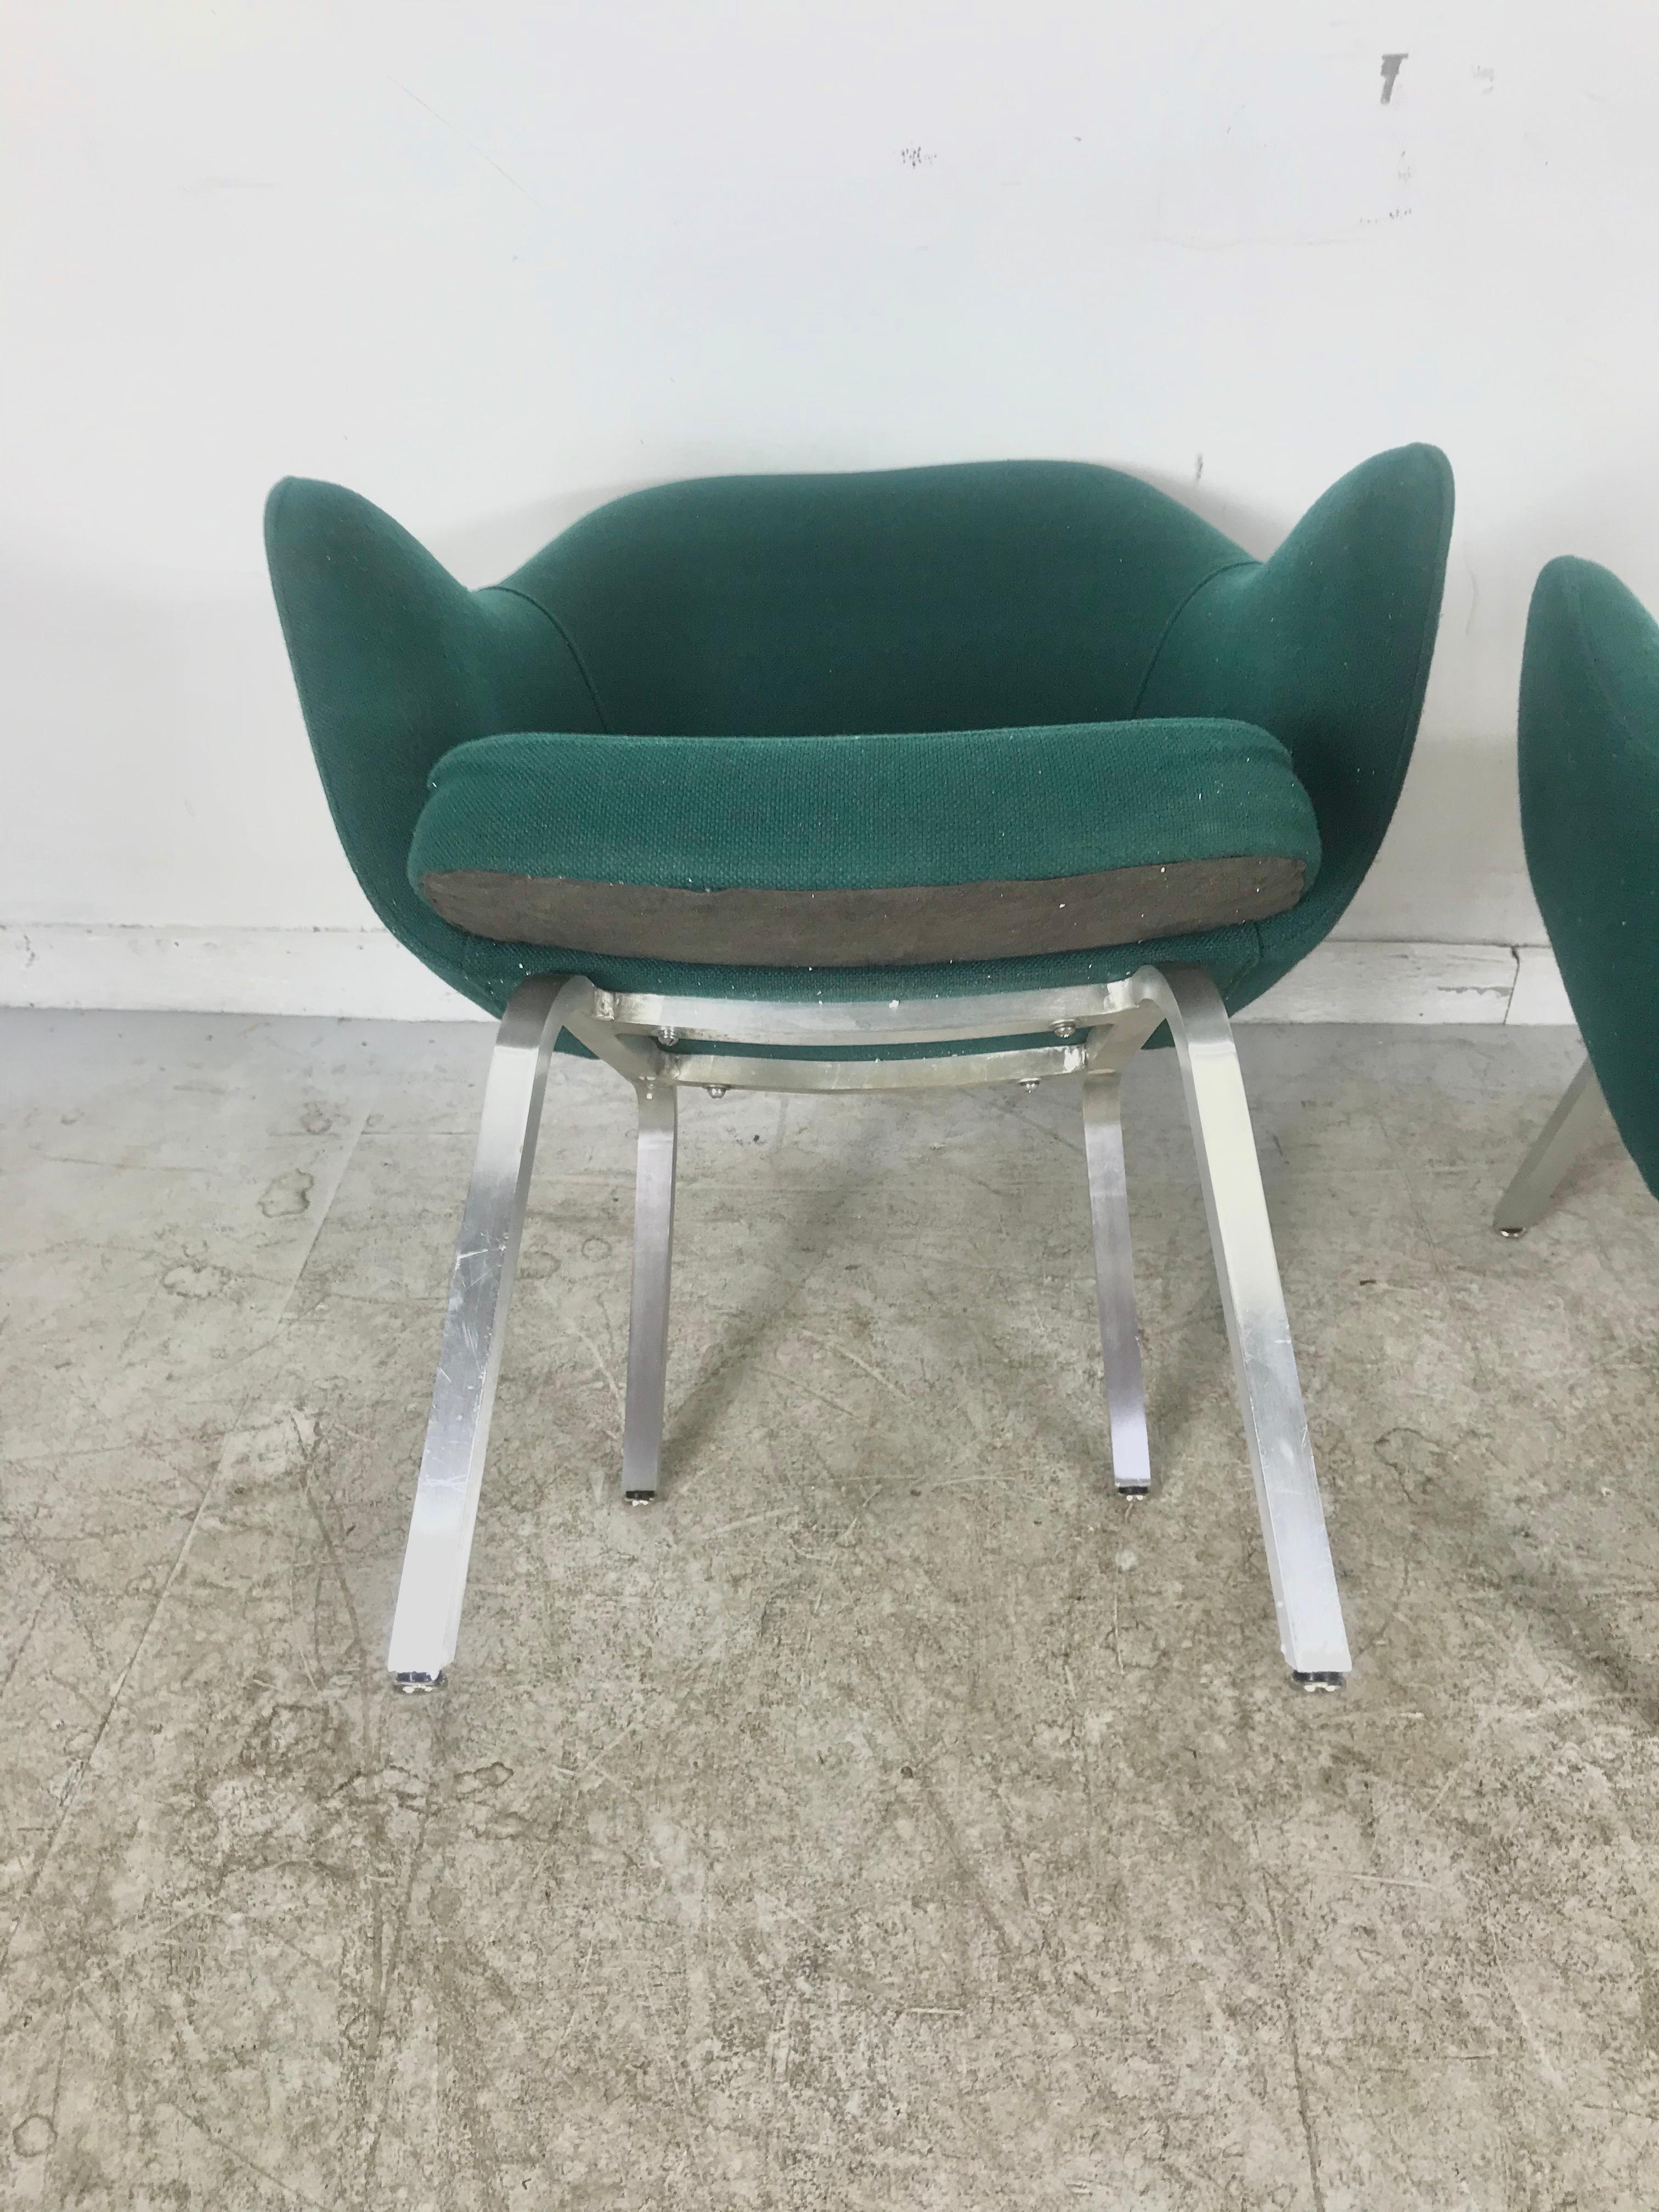 Conçus pour une année en production très limitée, ces fauteuils de salon ont été dessinés par Eero Saarinen pour Knoll. Les bases carrées en aluminium sont inhabituelles, les pieds légèrement plus bas rendent ces fauteuils extrêmement confortables,